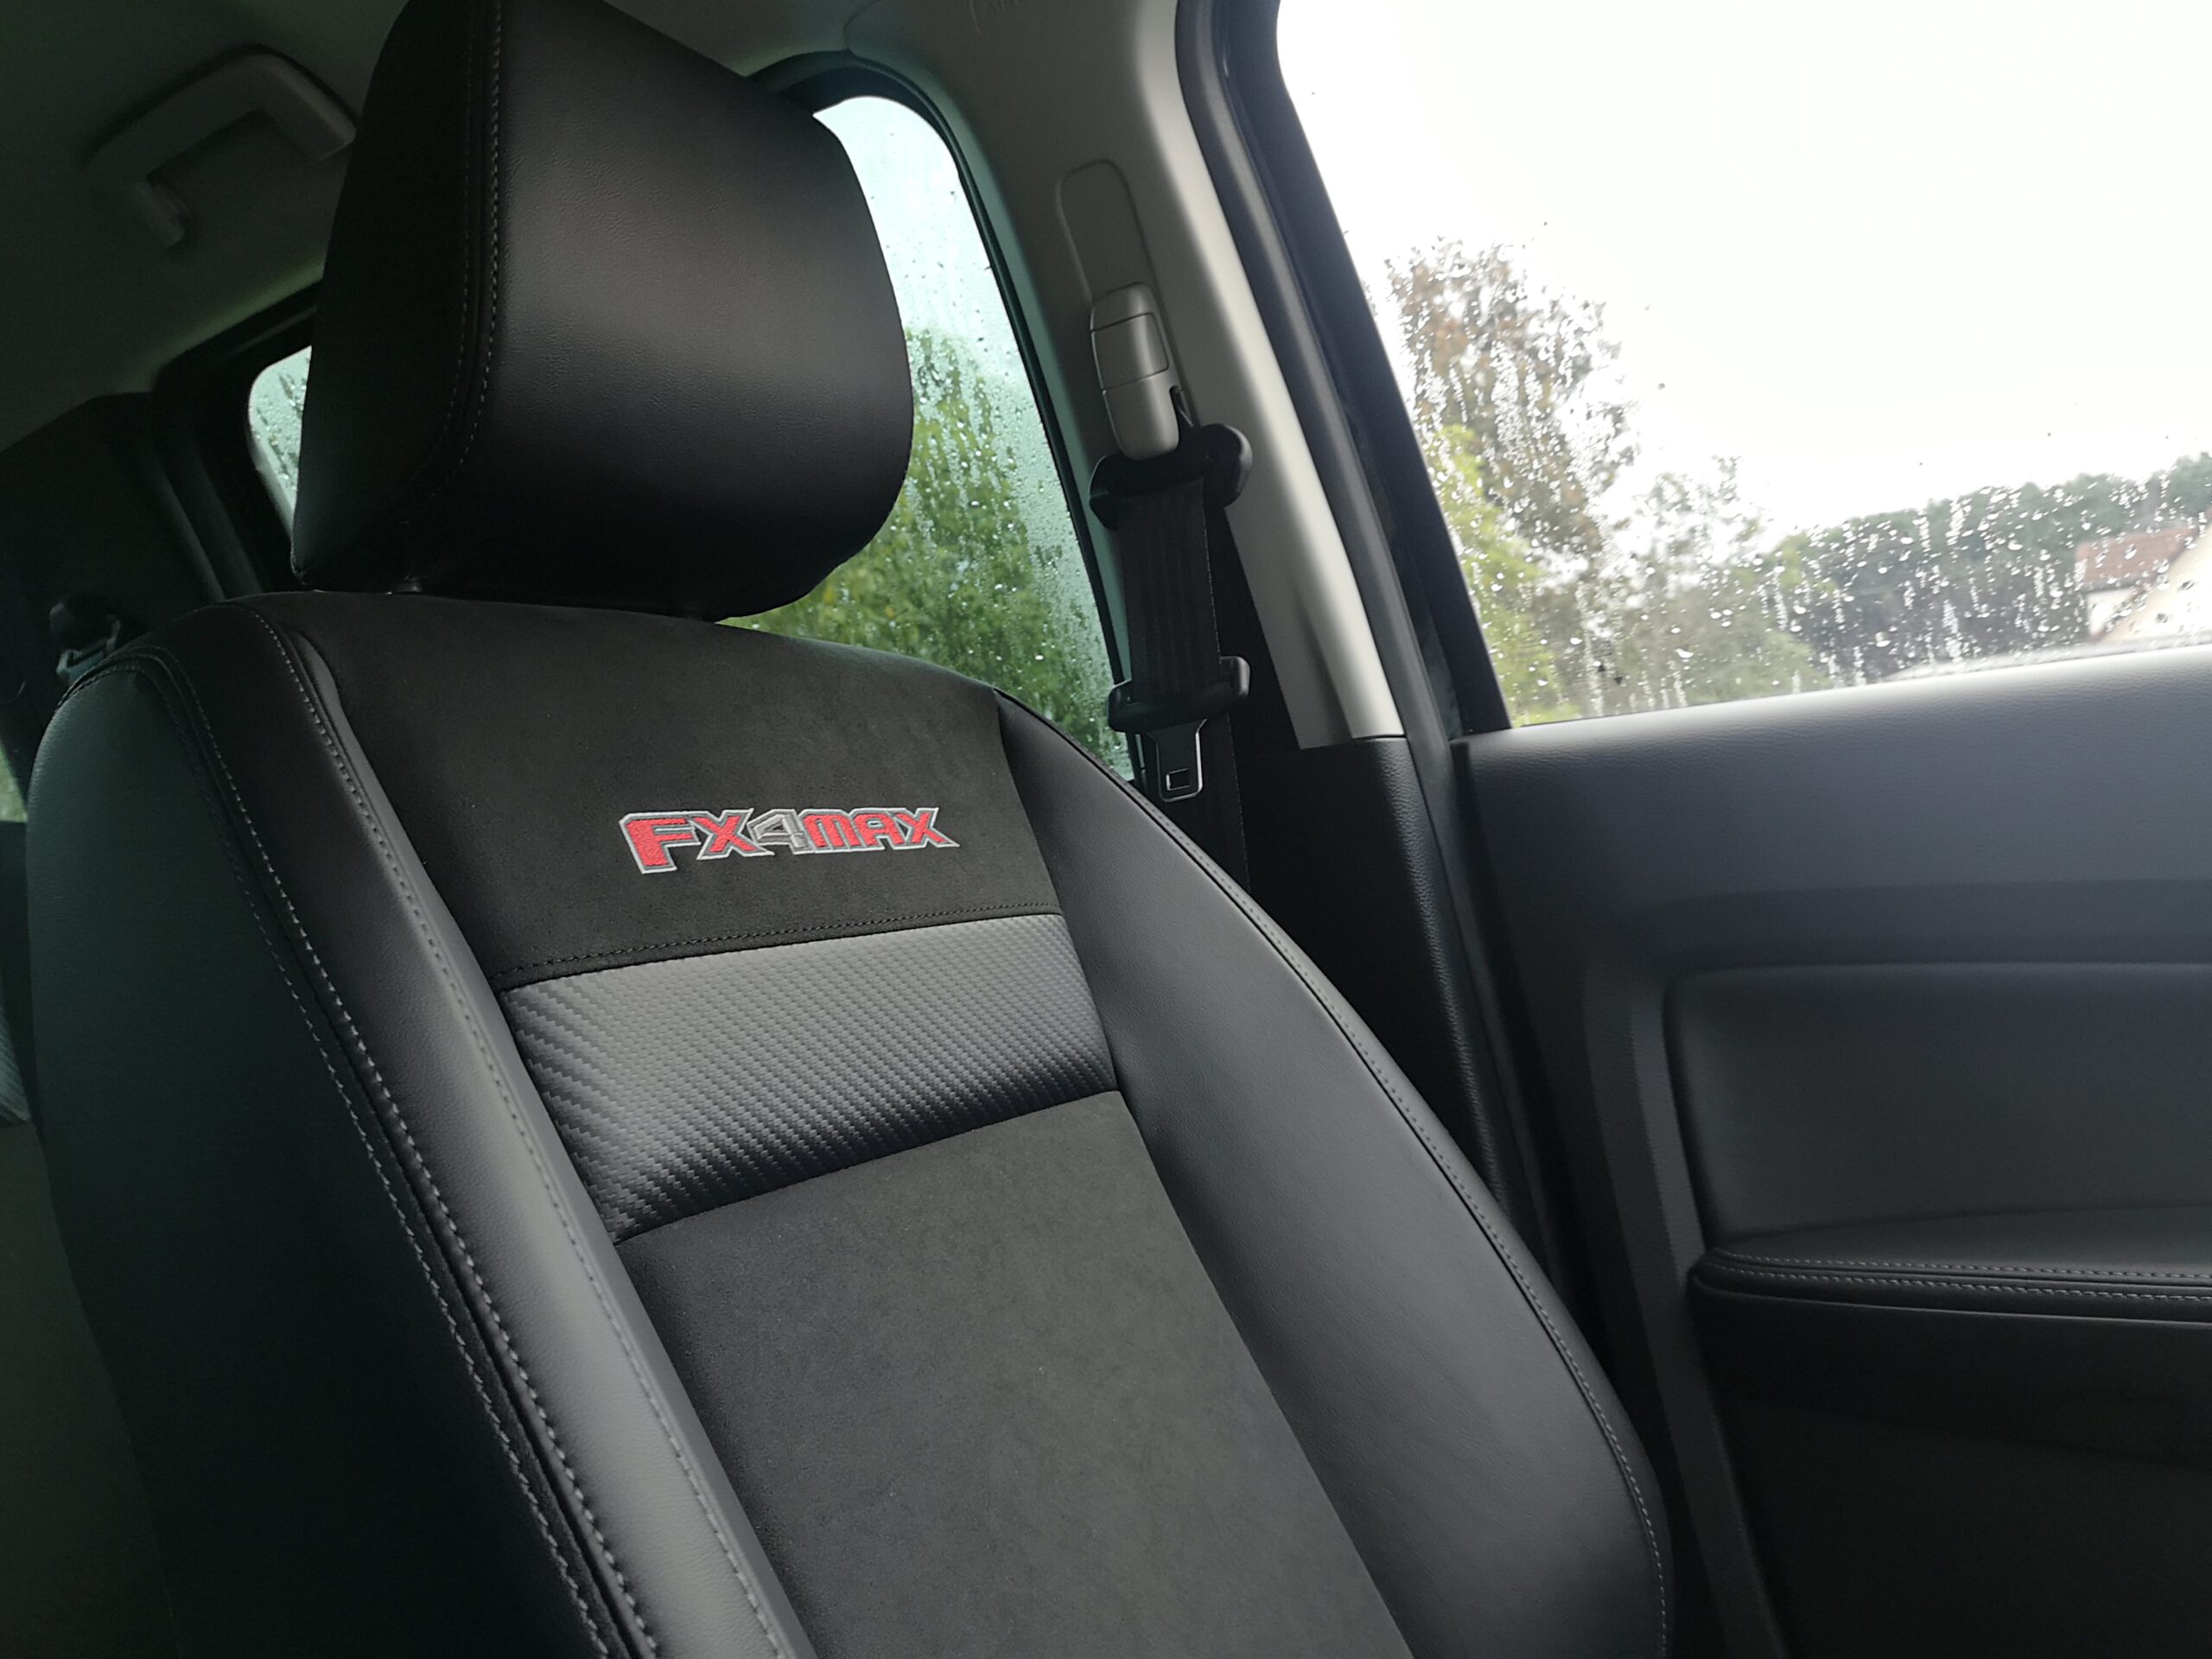 FX4 Max seats